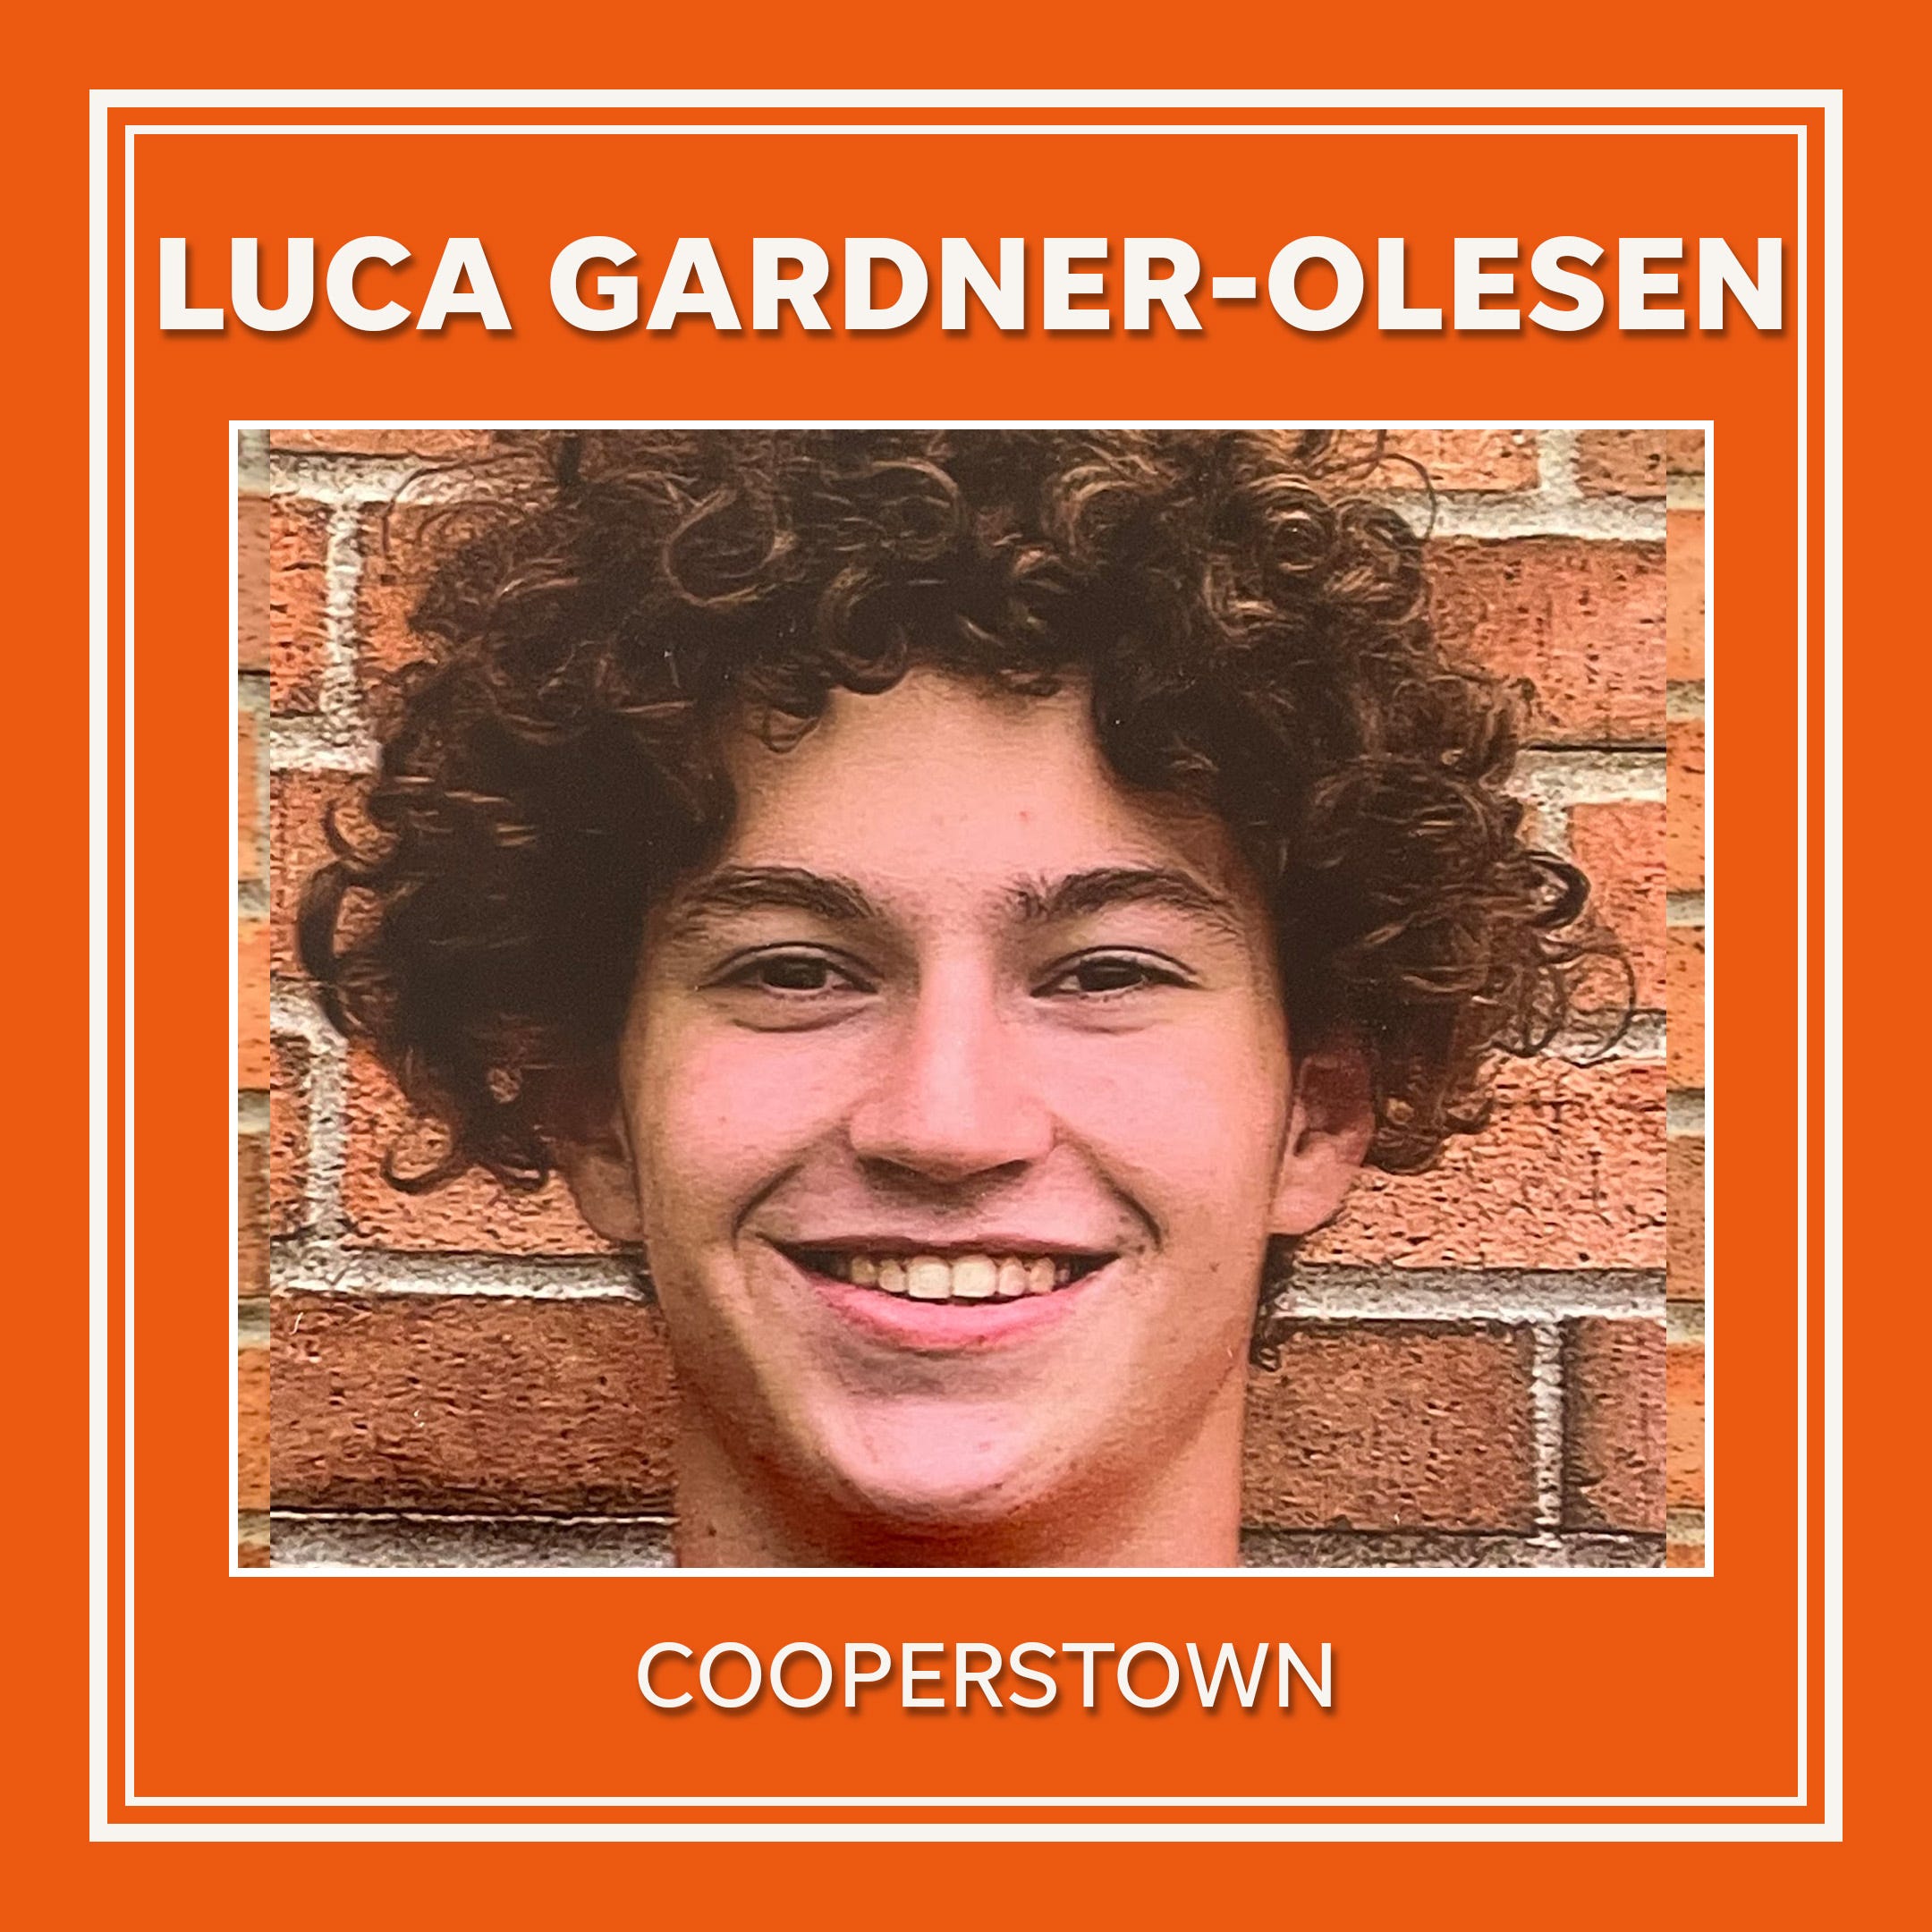 Luca Gardner-Olesen